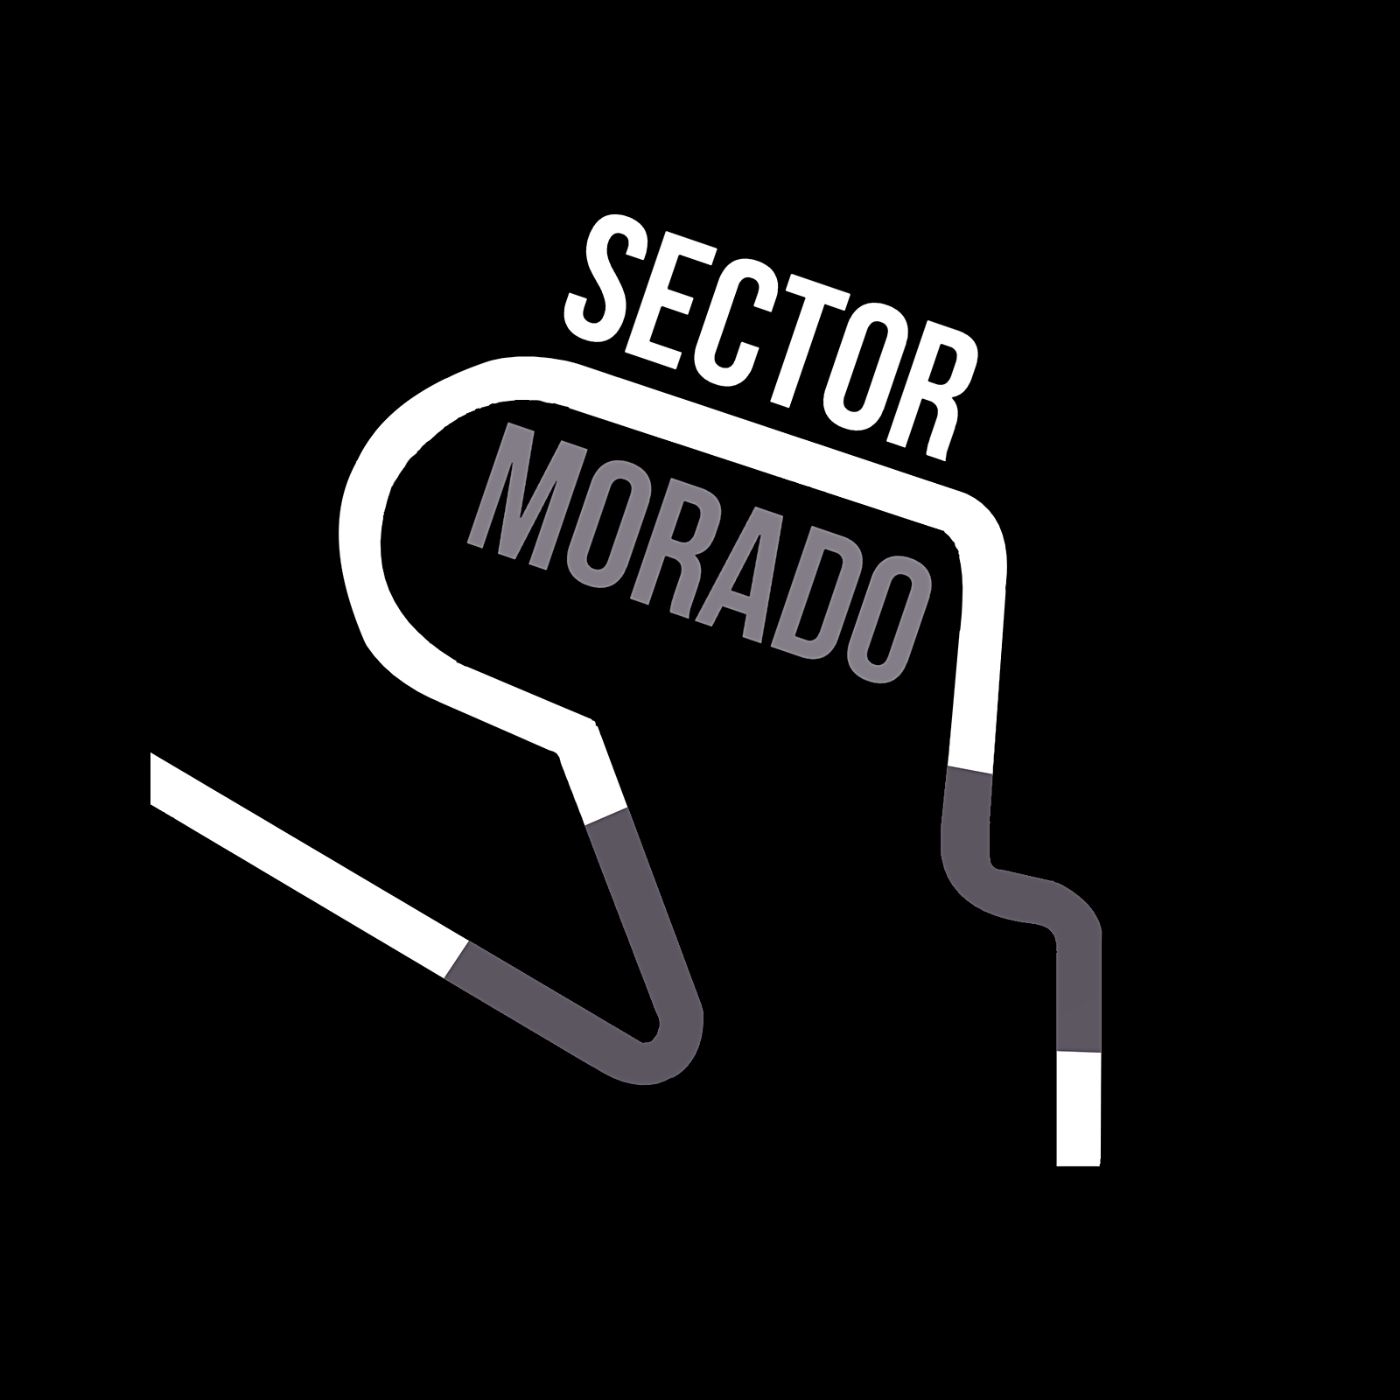 Sector morado